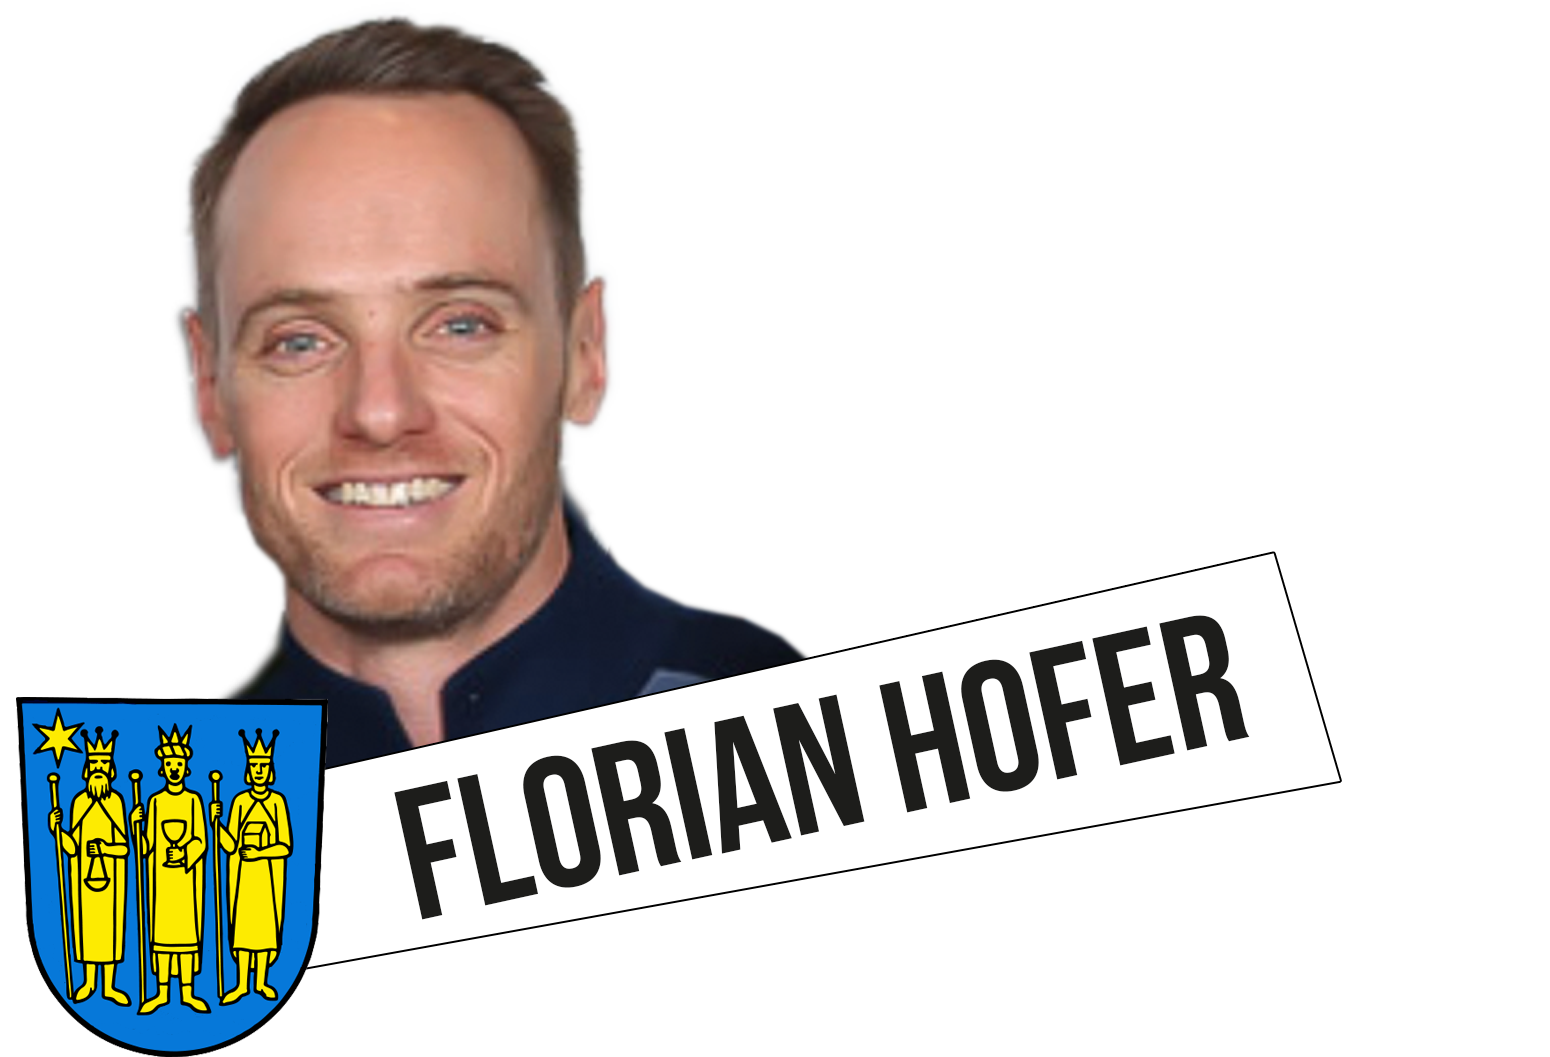 Florian Hofer